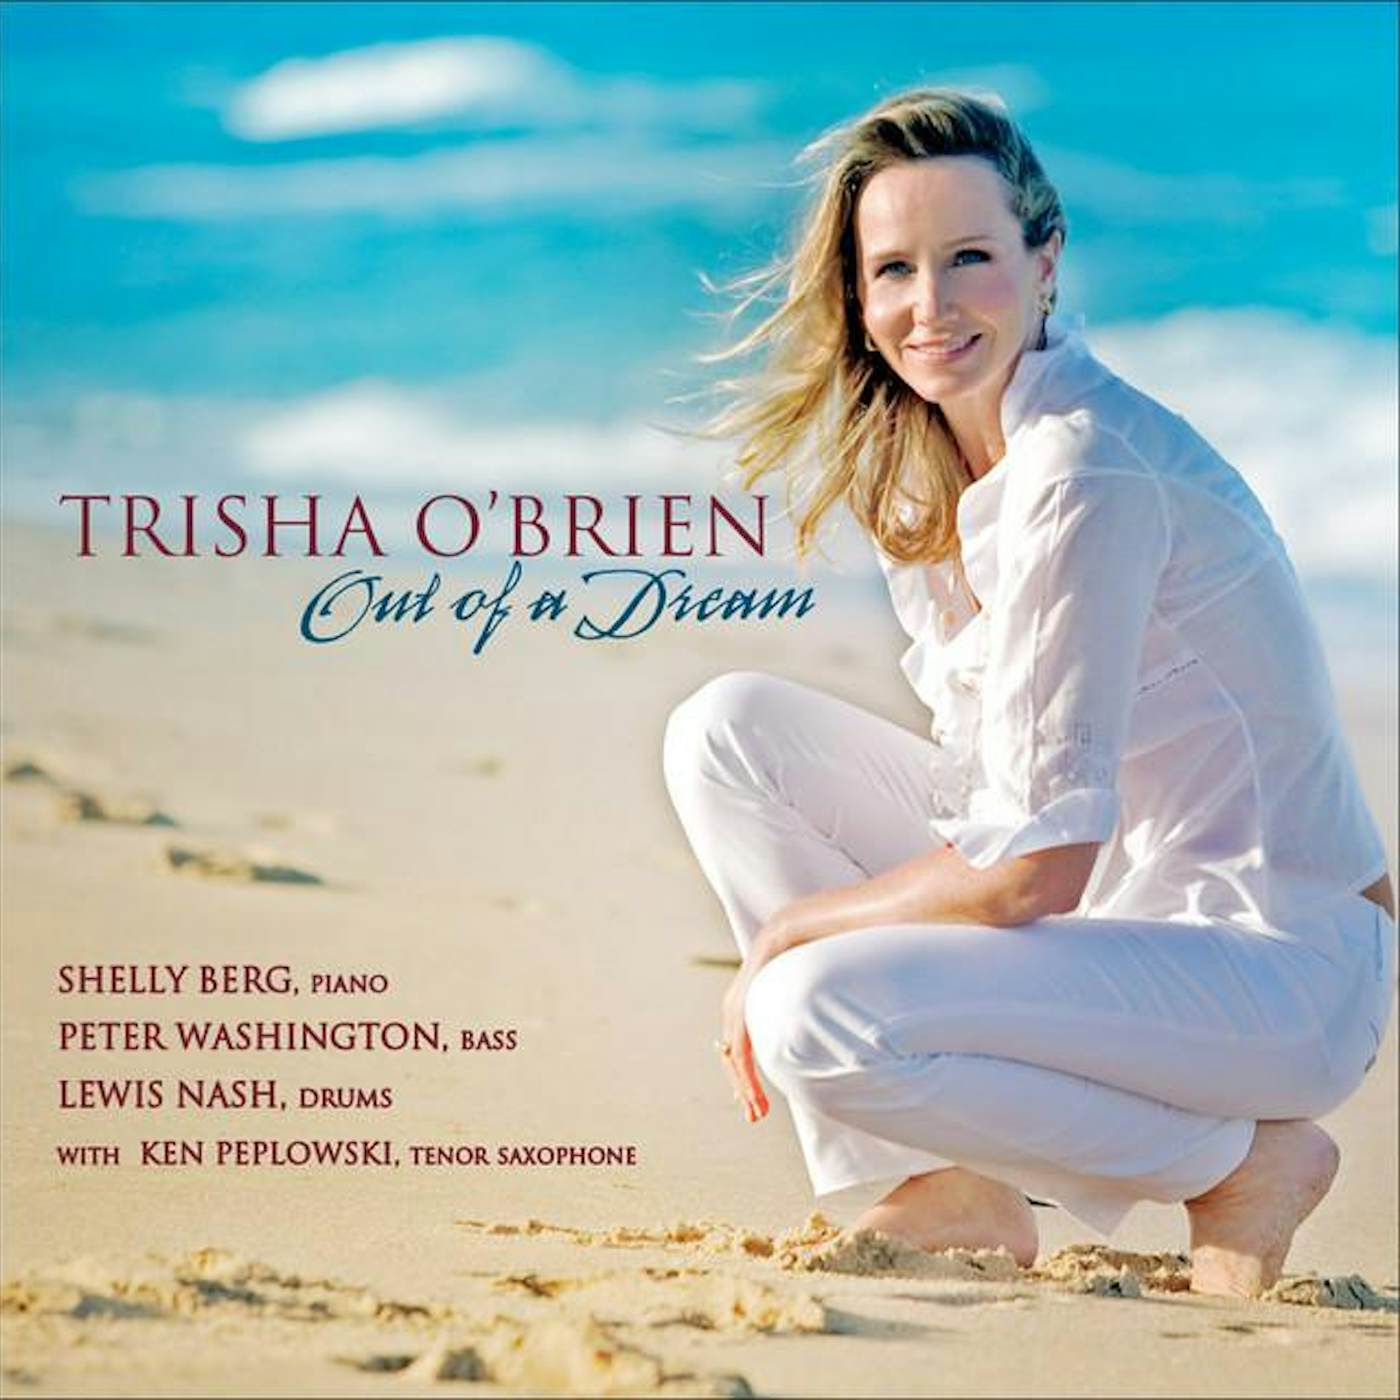 Trisha O'Brien